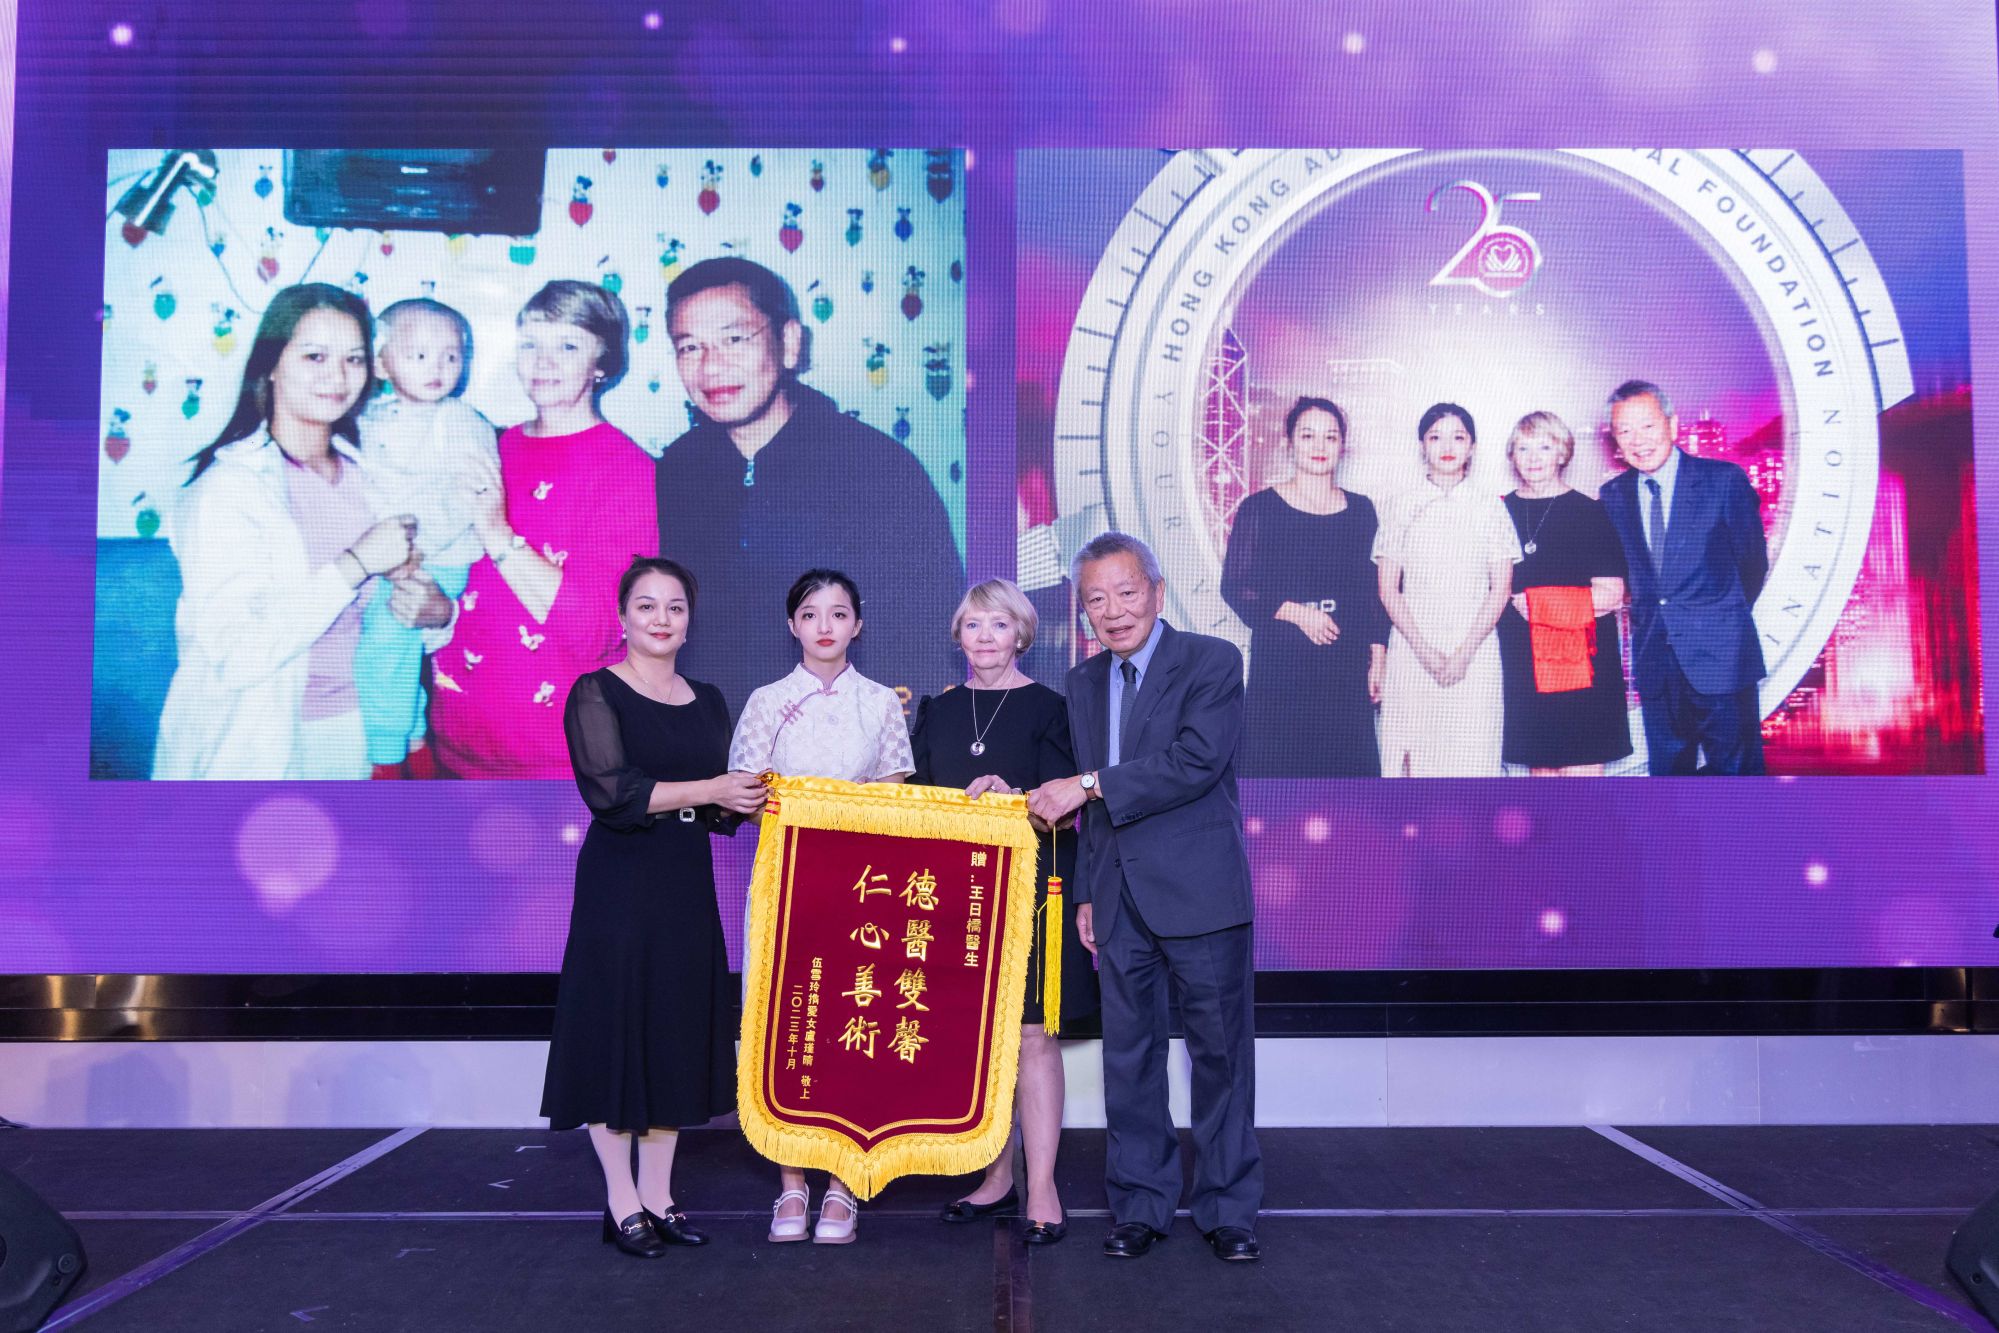 25 años de labor caritativa de la Fundación del Hospital Adventista de Hong Kong